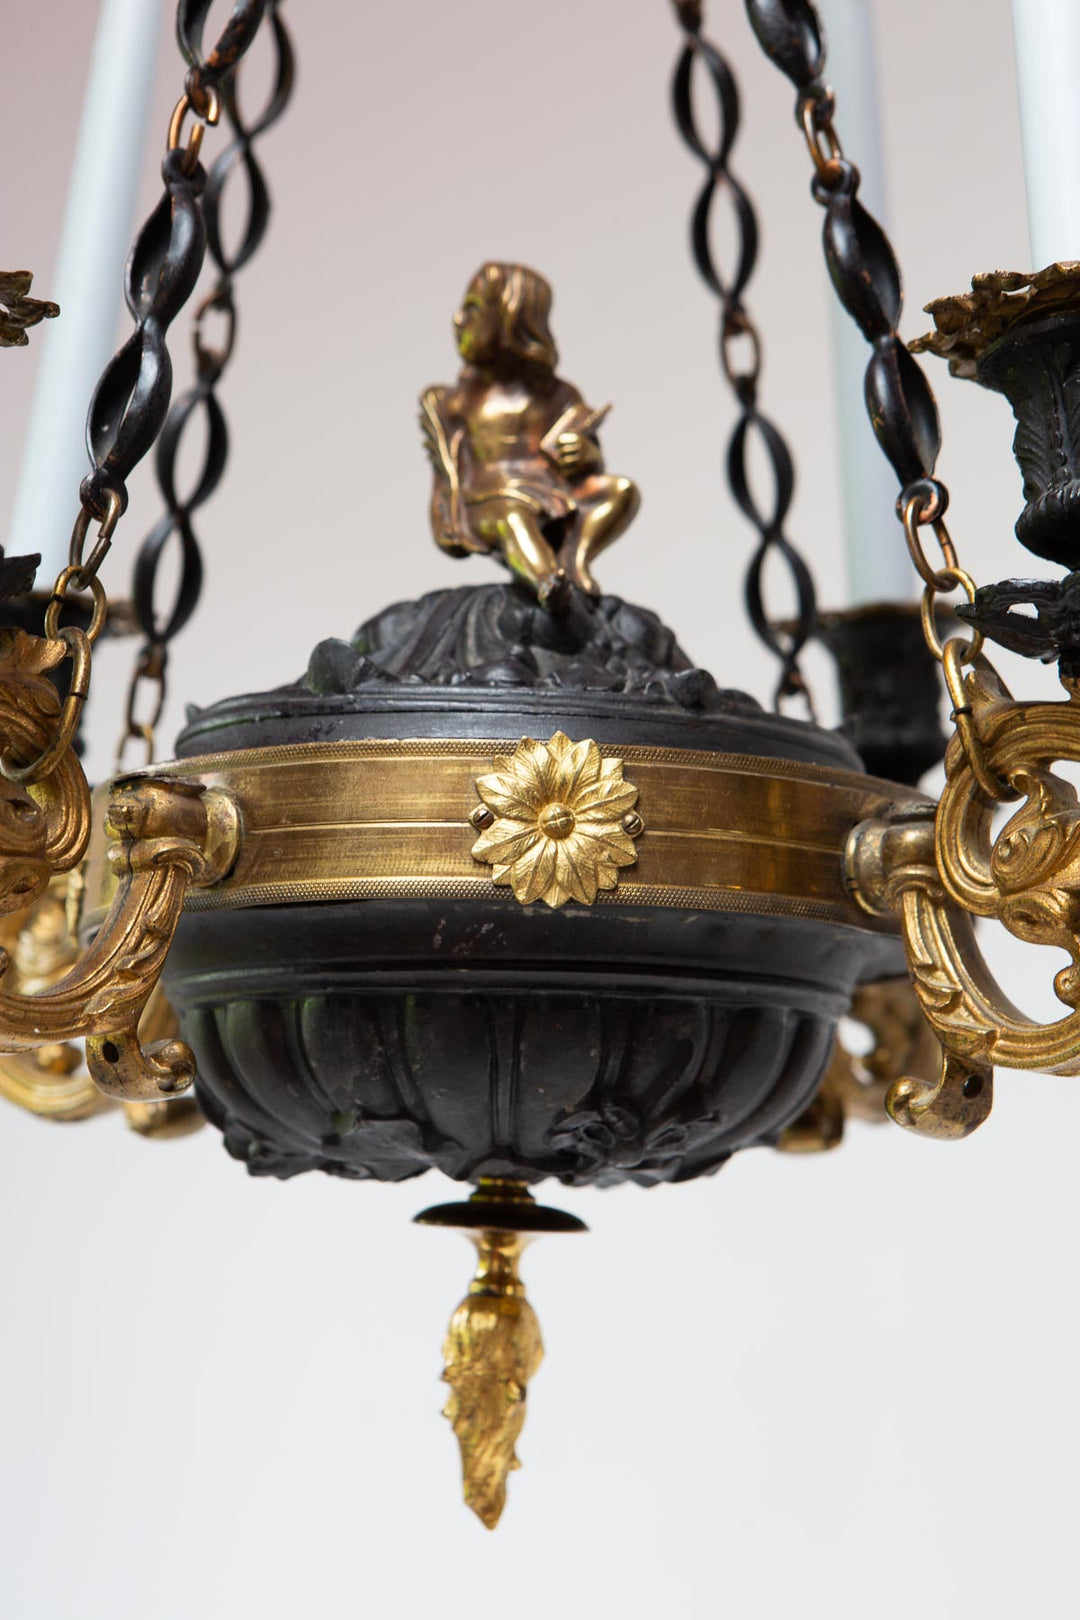 Candelabro techo sueco Imperio s. XIX 4 velas swedish candelabra